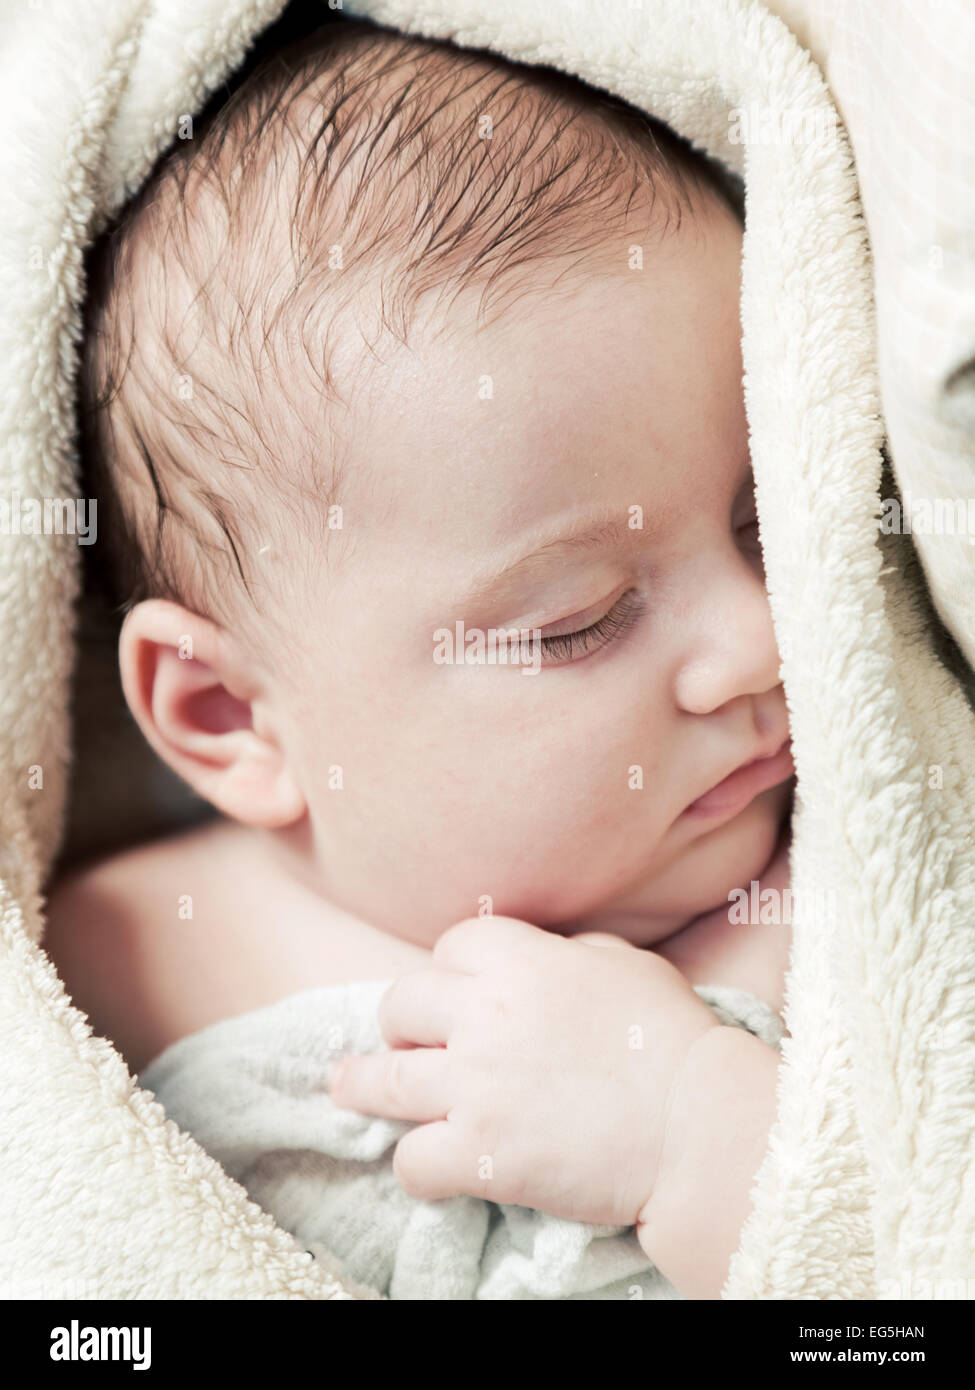 Bella 3 mesi bambino dorme in morbido manto, close up volto ritratto Foto Stock